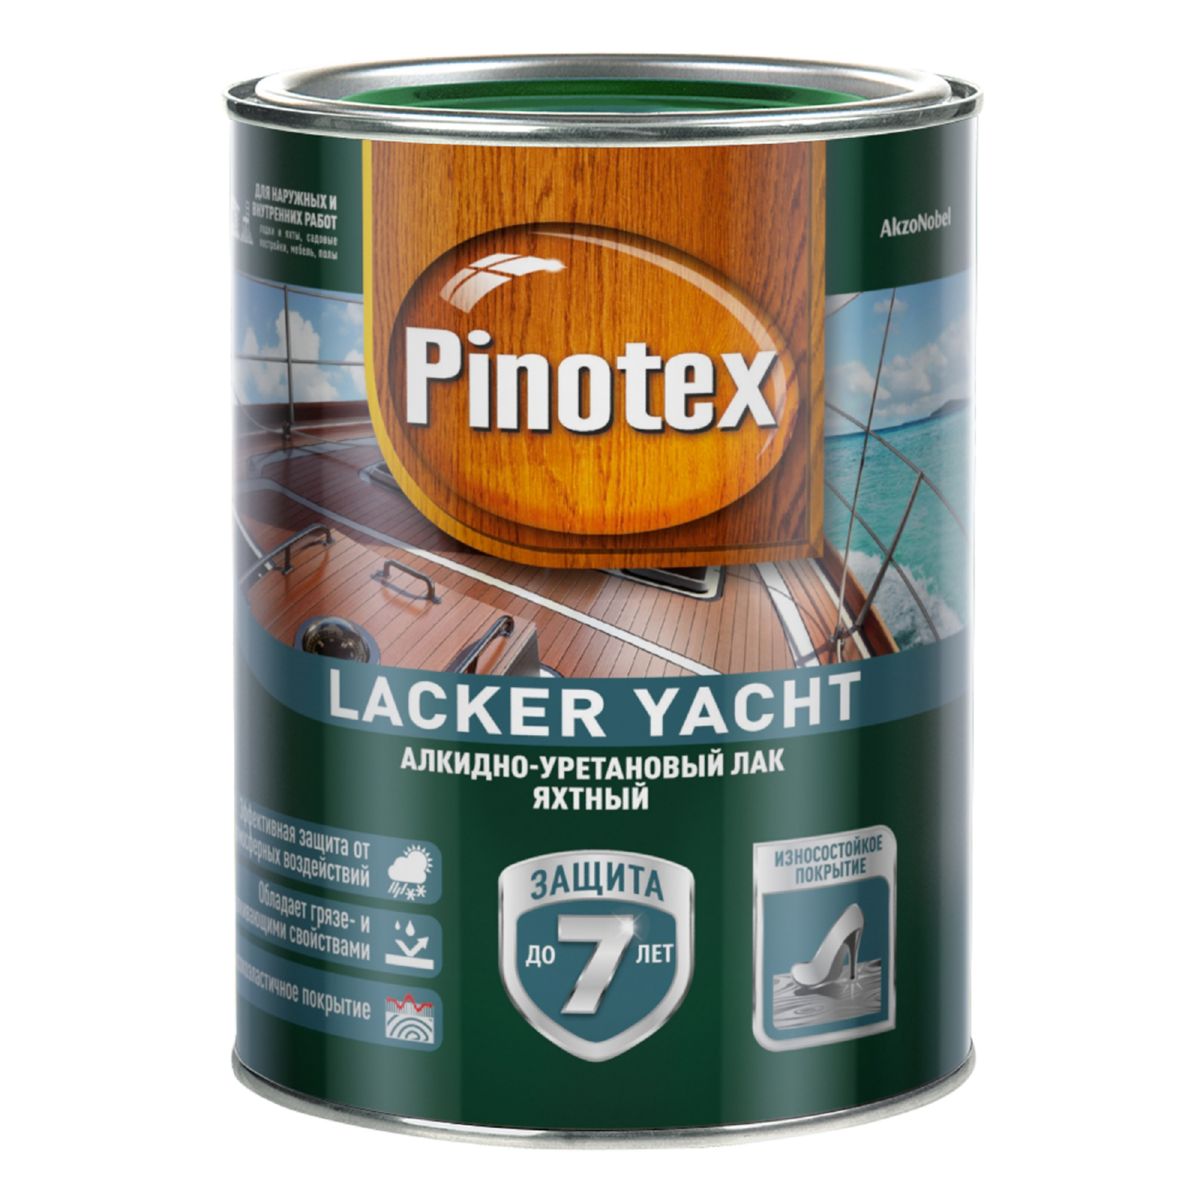 Лак яхтный Пинотекс Lacker Yacht 90 алкидно-уретановый глянцевый, 2,7л 